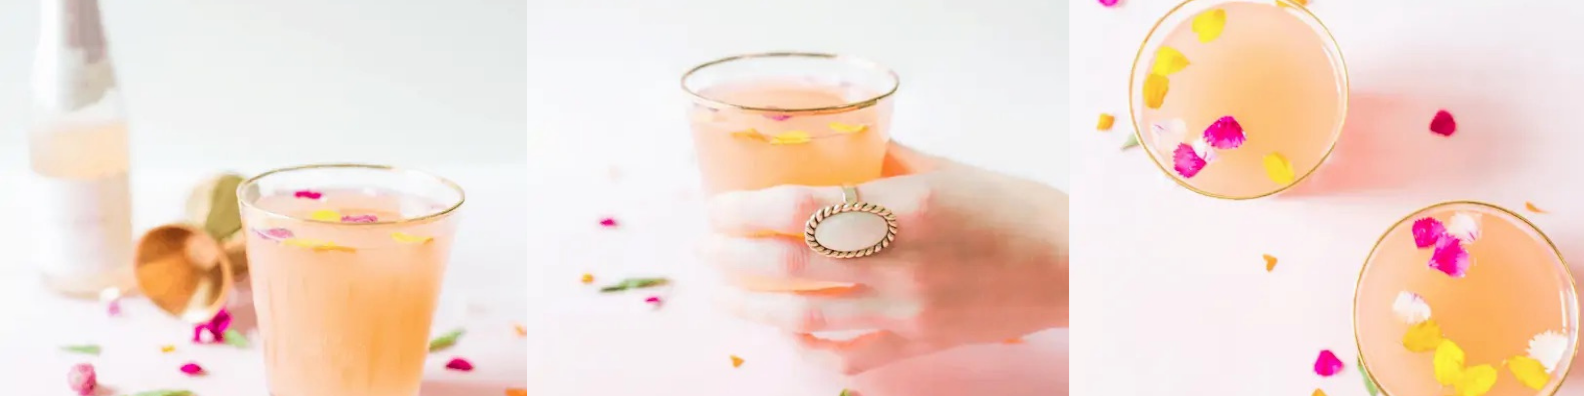 brut rosé cocktail